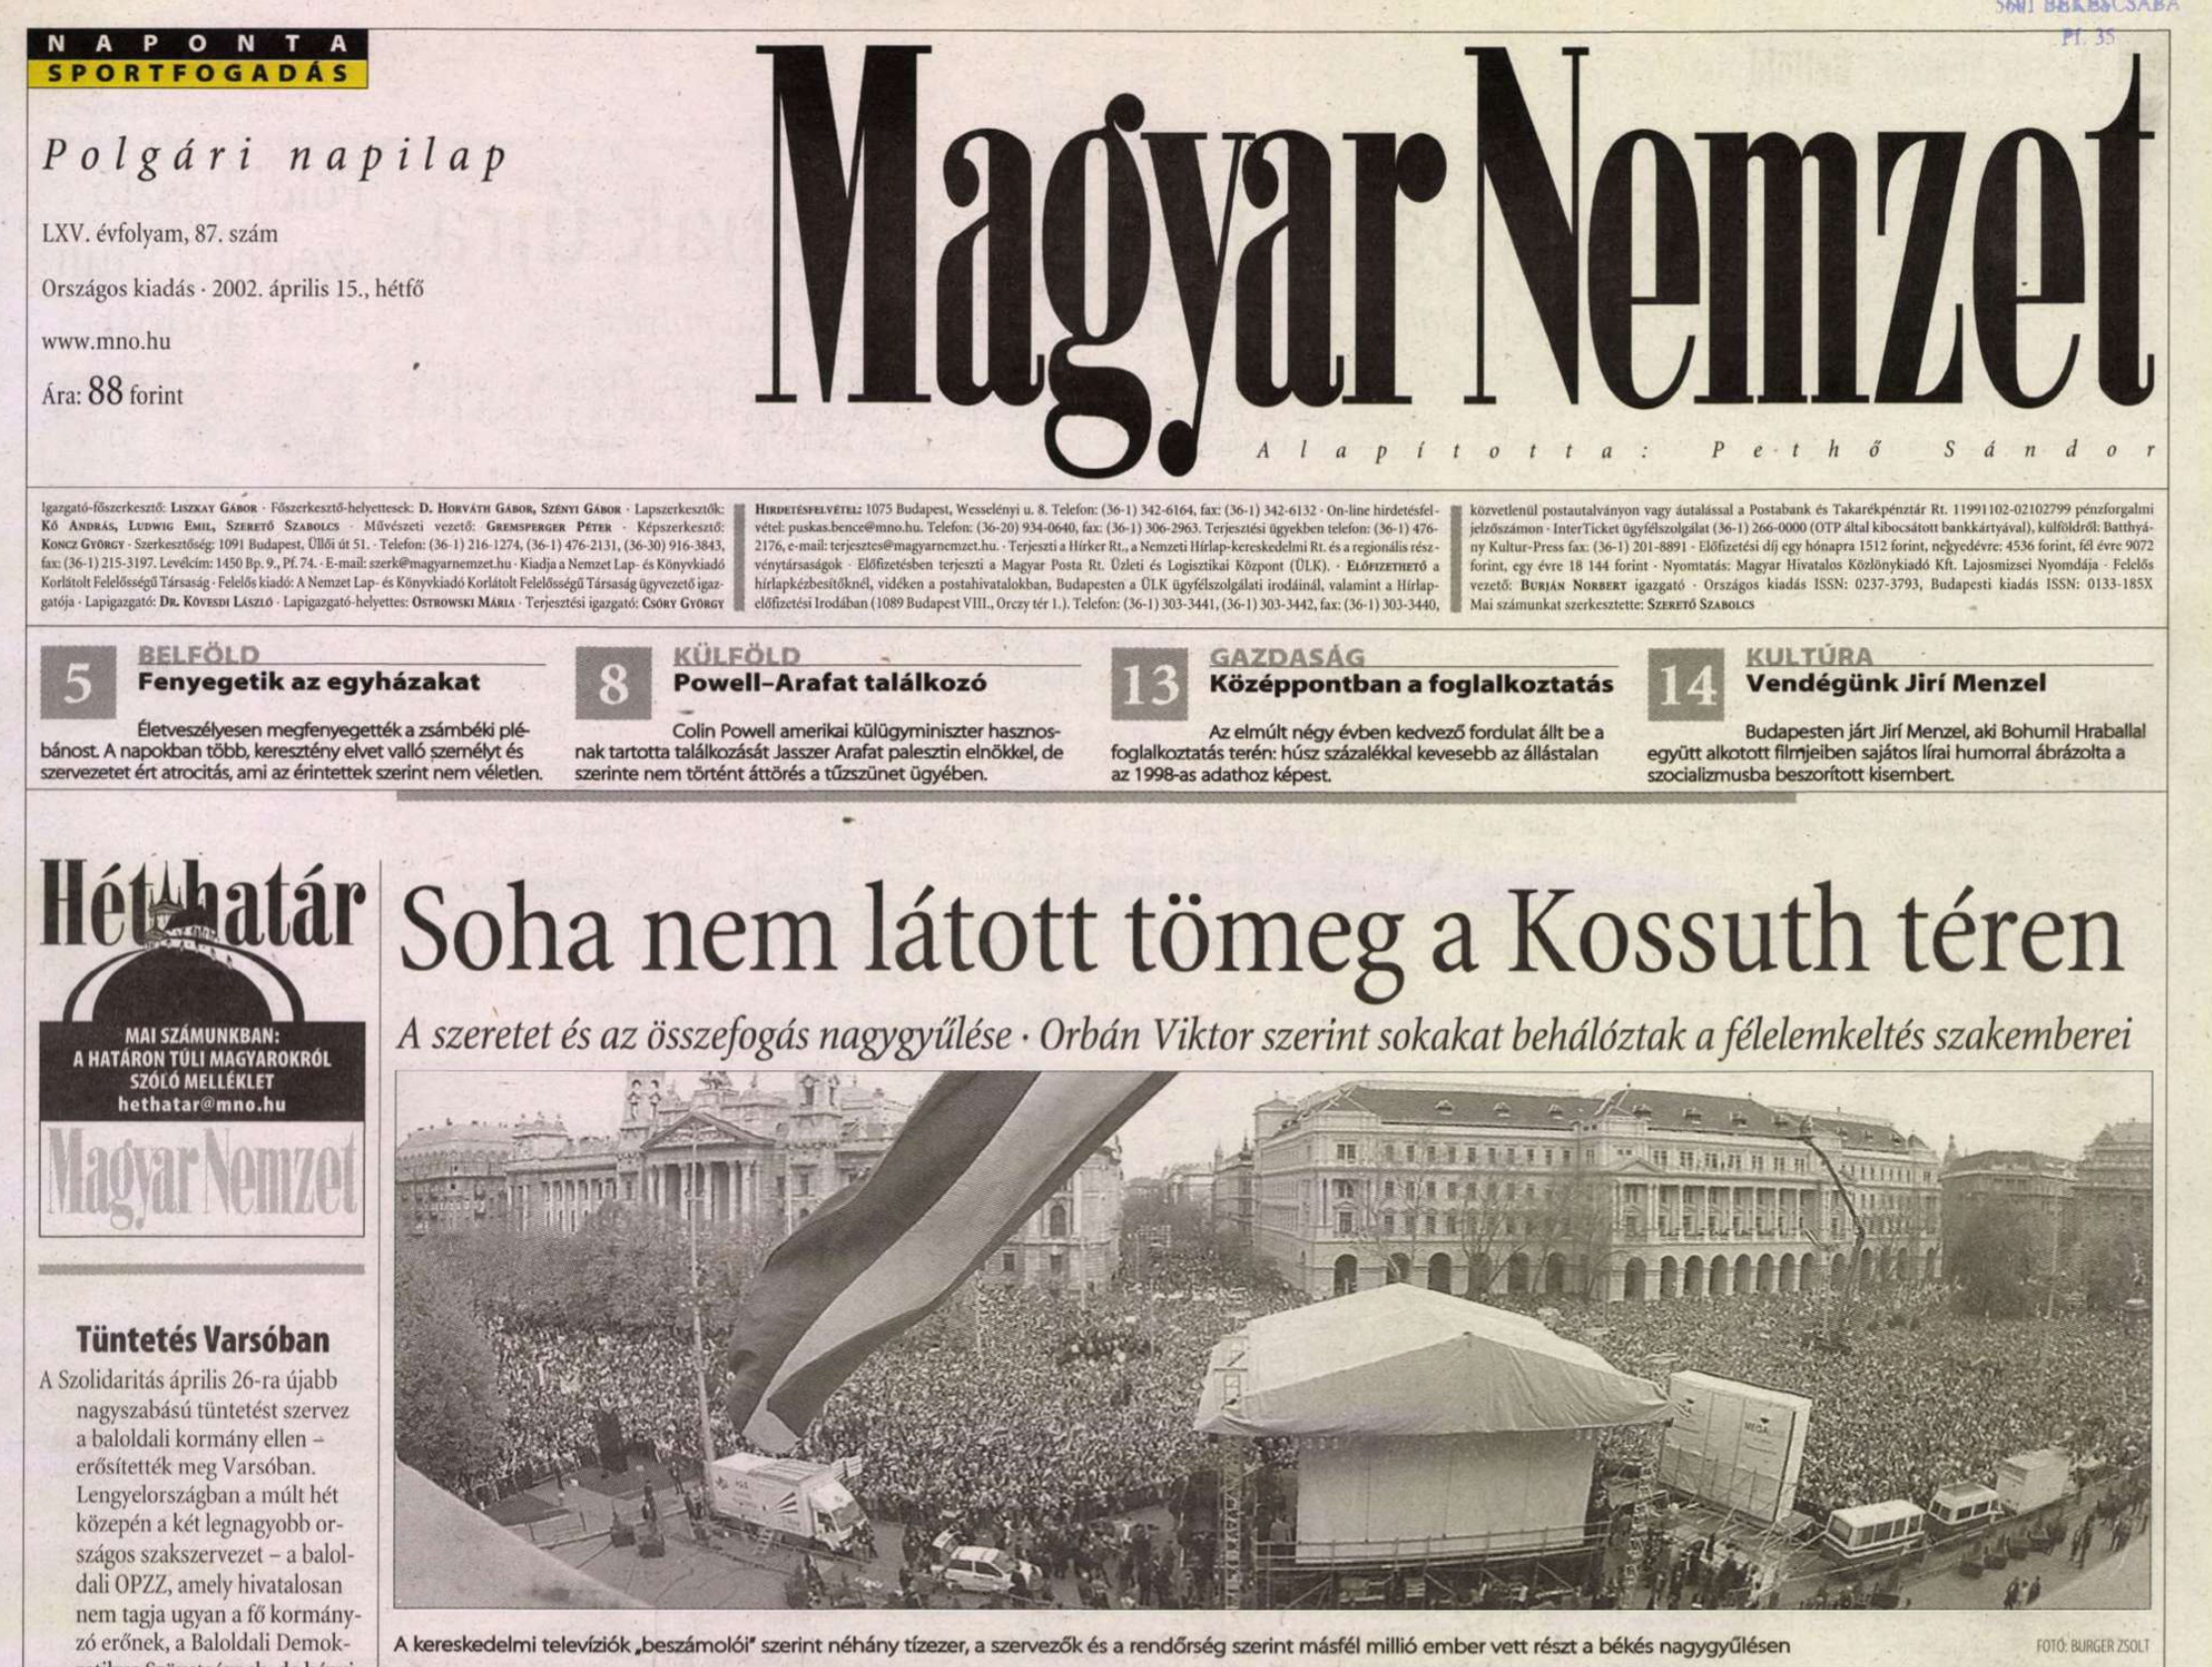 1,5 millió emberről írt a Kossuth téri nagygyűlés utáni hétfőn a Magyar Nemzet